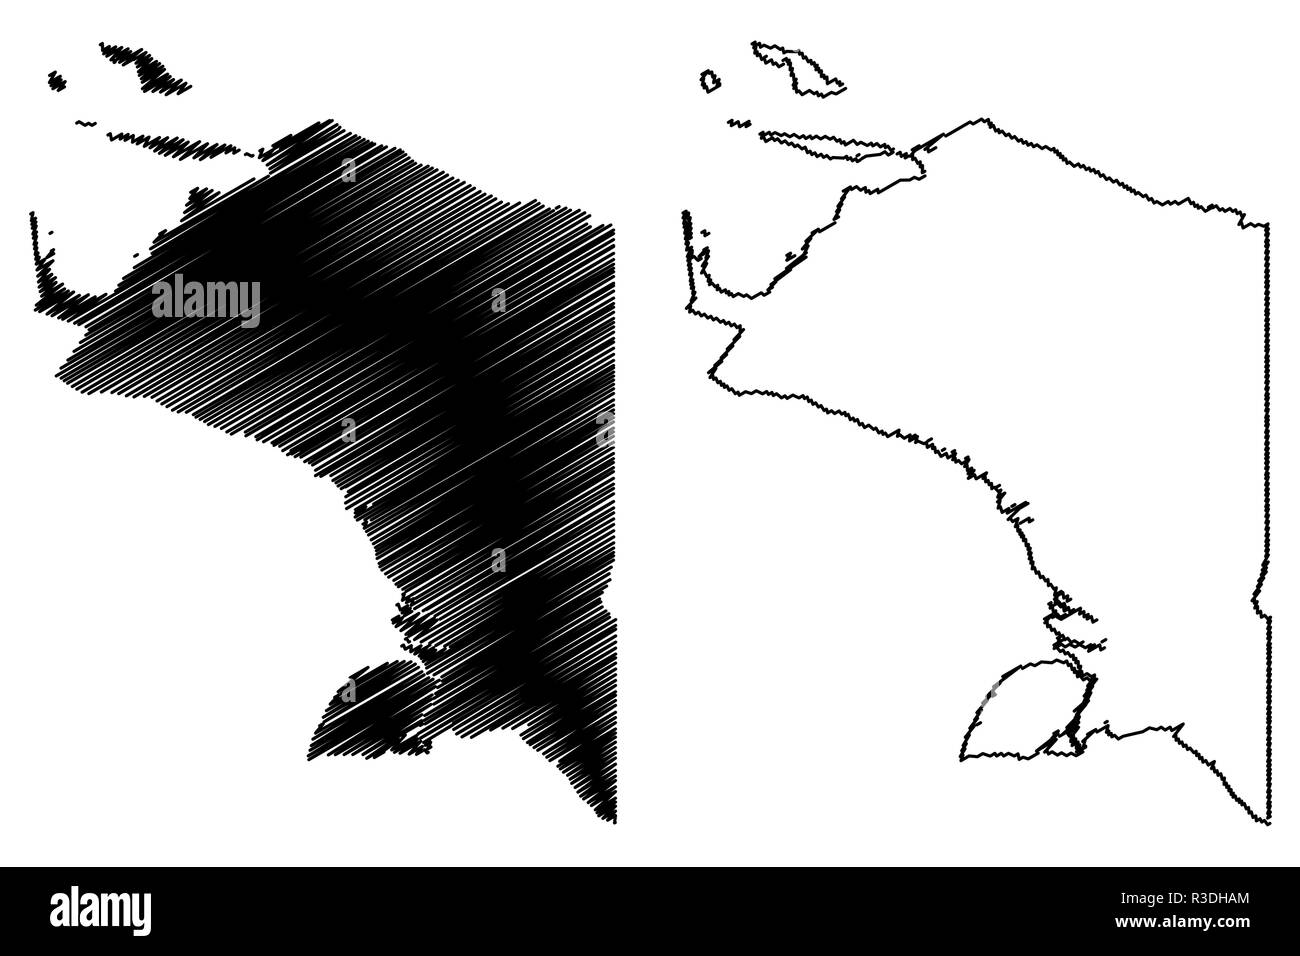 Unterteilungen der Papua (Indonesien, Provinzen Indonesiens) Karte Vektor-illustration, kritzeln Skizze (West Papua Neu Guinea) Karte anzeigen Stock Vektor